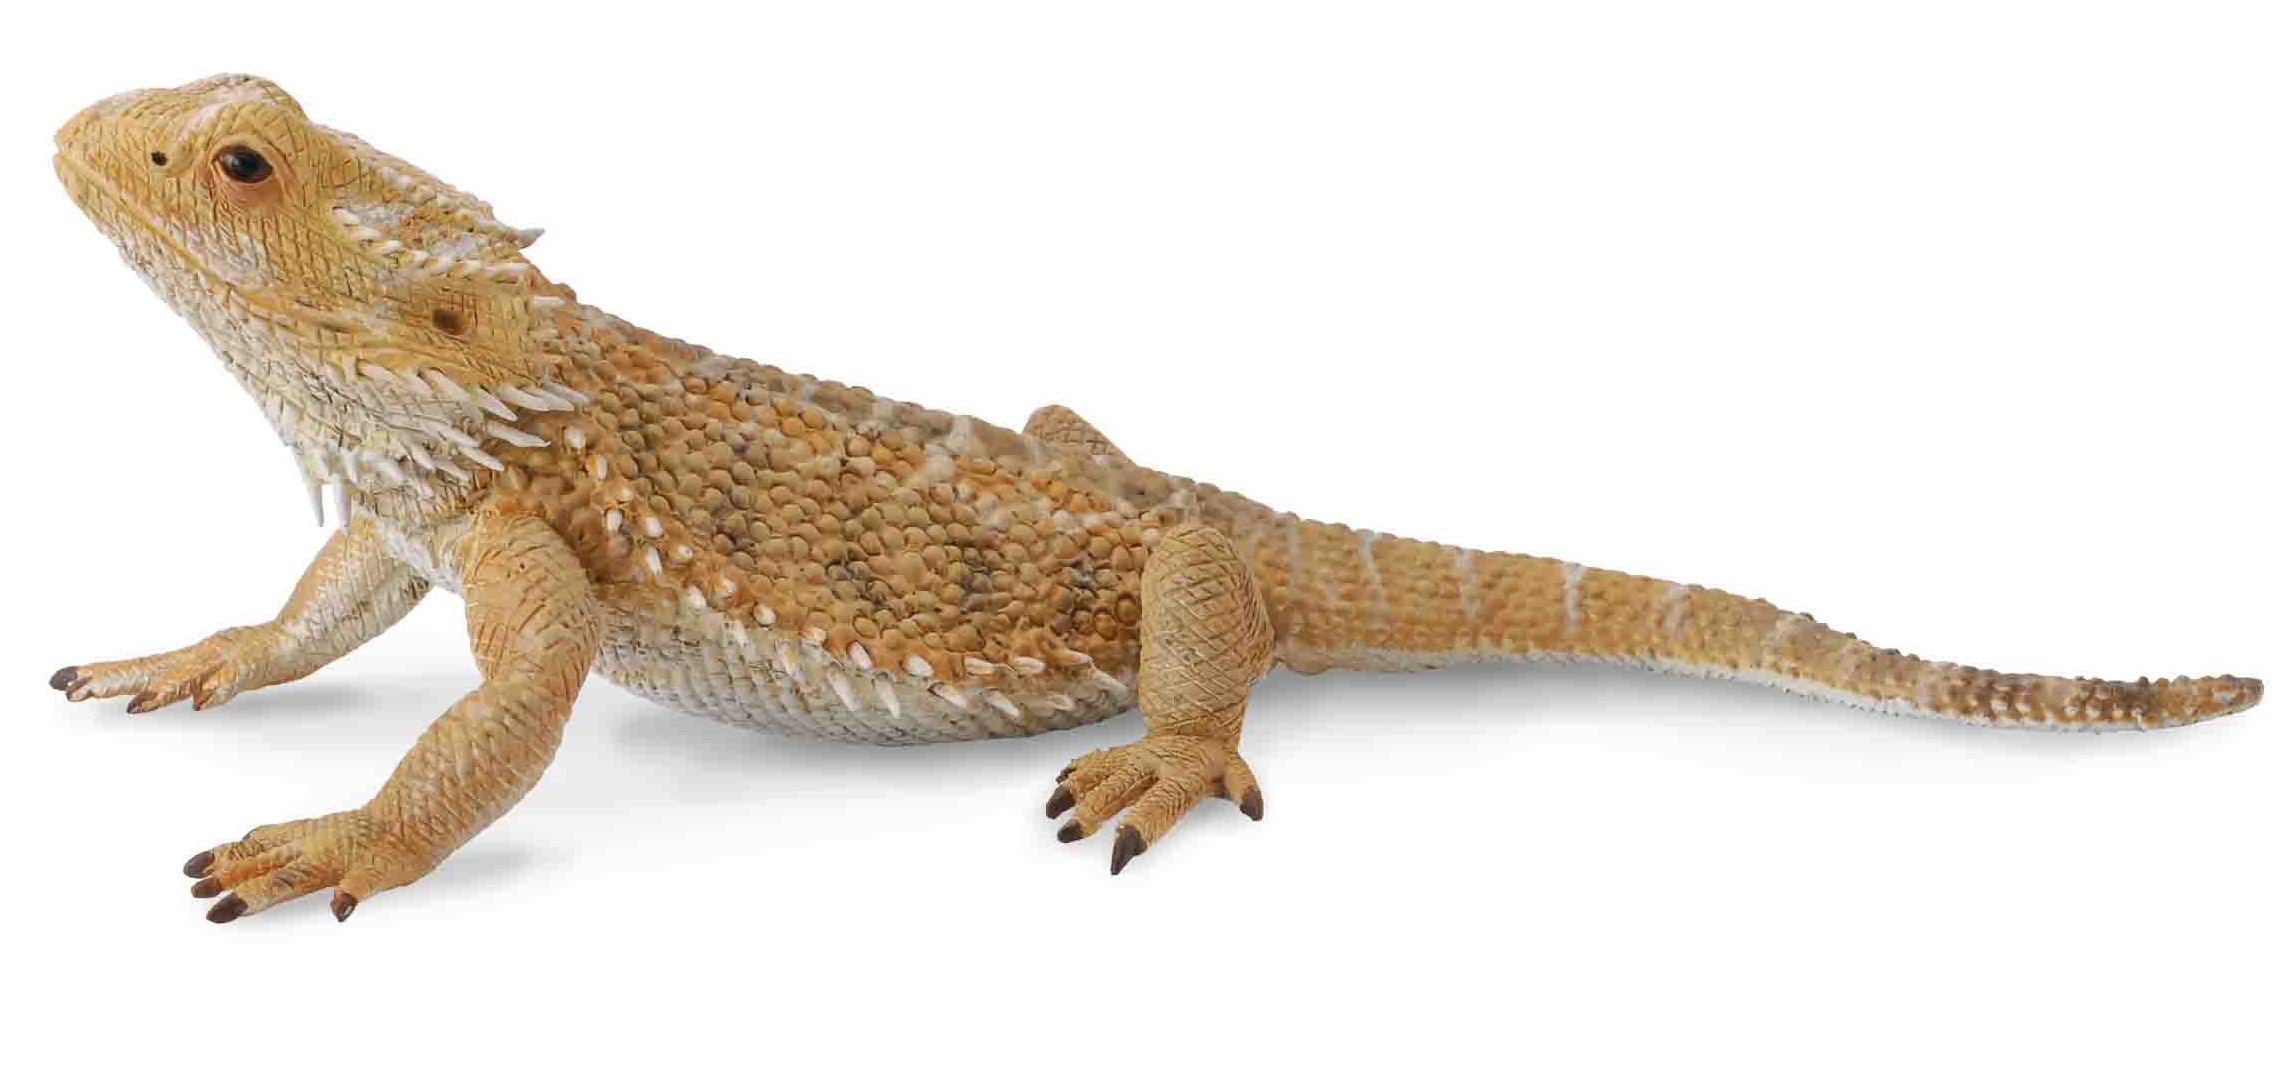 Beardead Dragon Lizard 88567b - Орск 